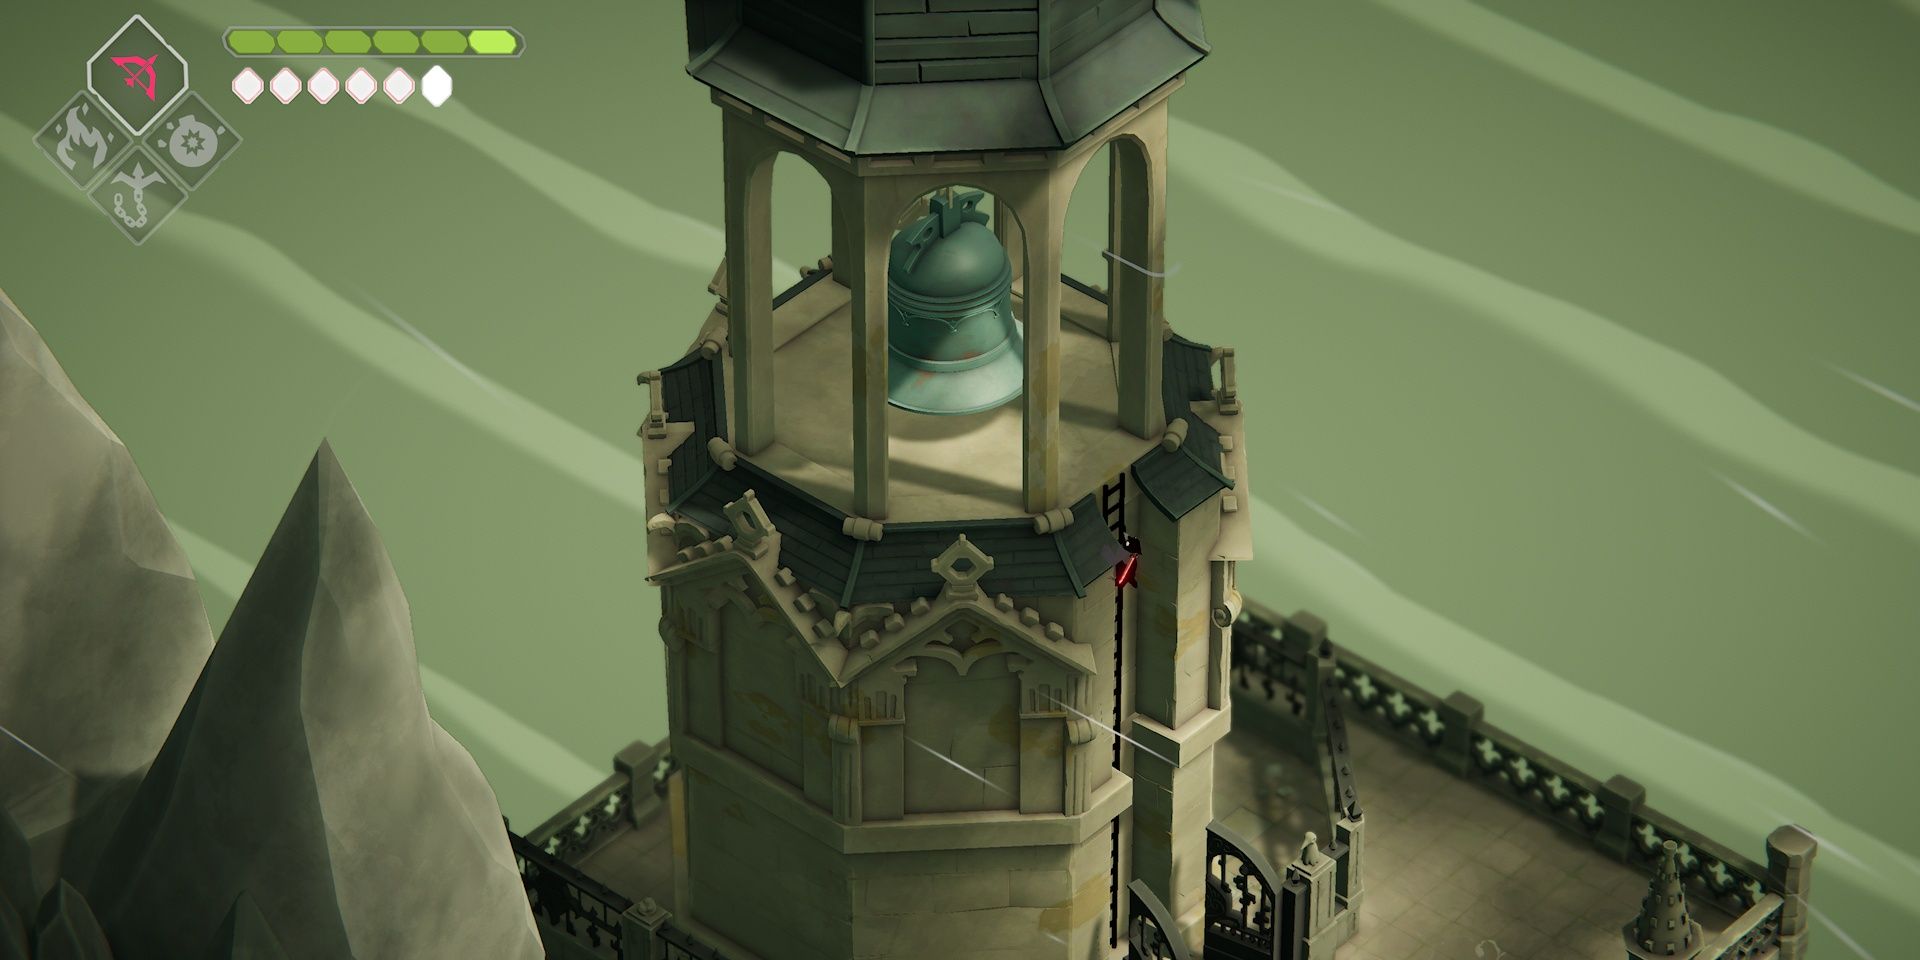 The crow climbing the belltower in Death's Door